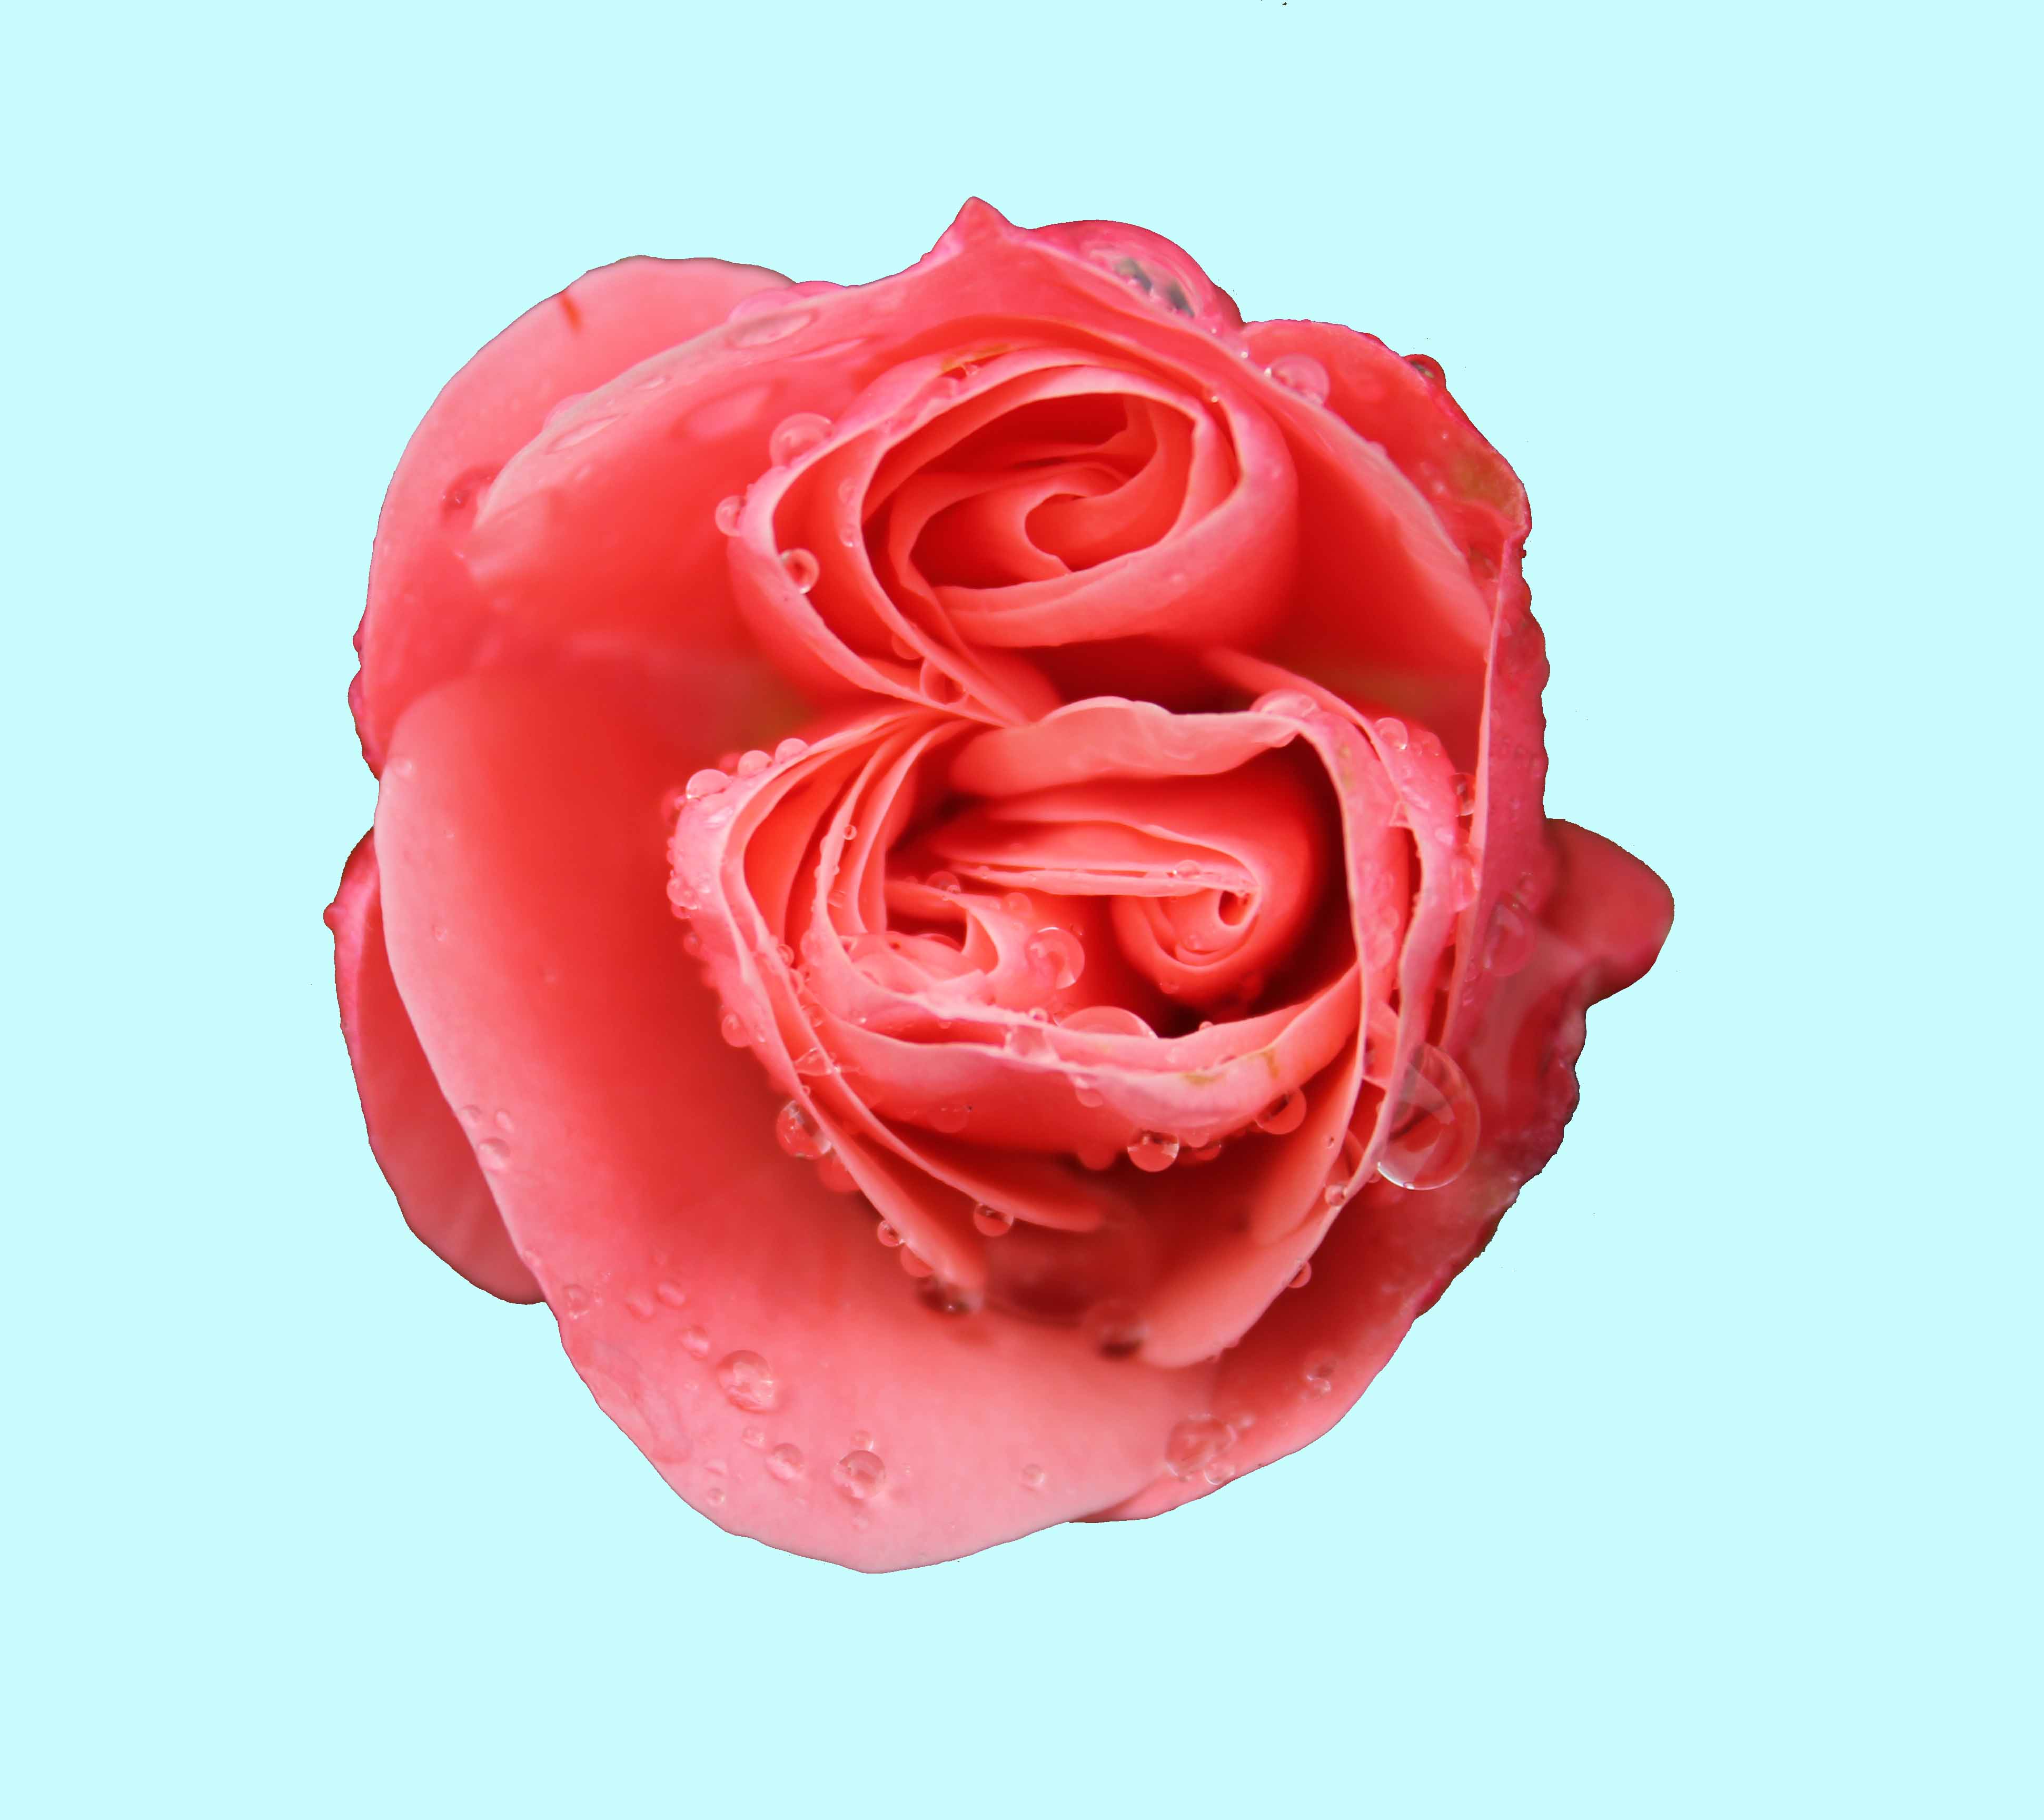 Pink Rose PSD by Avahlon-Stock on DeviantArt